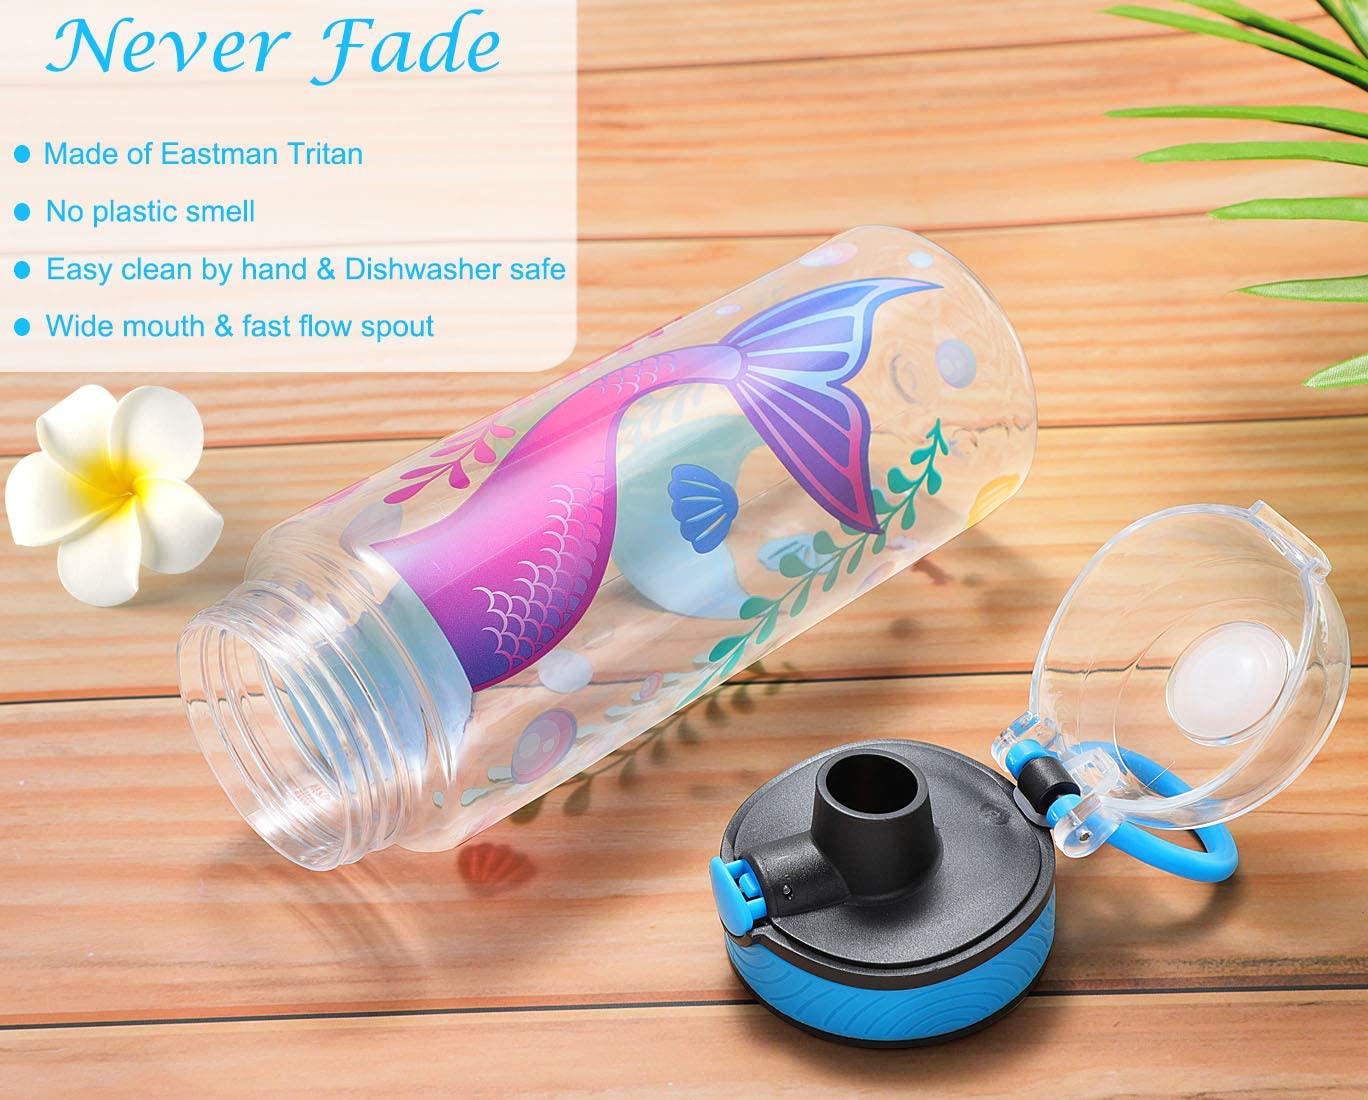 Cute Water Bottle for School Kids Girls, BPA FREE Tritan & Leak